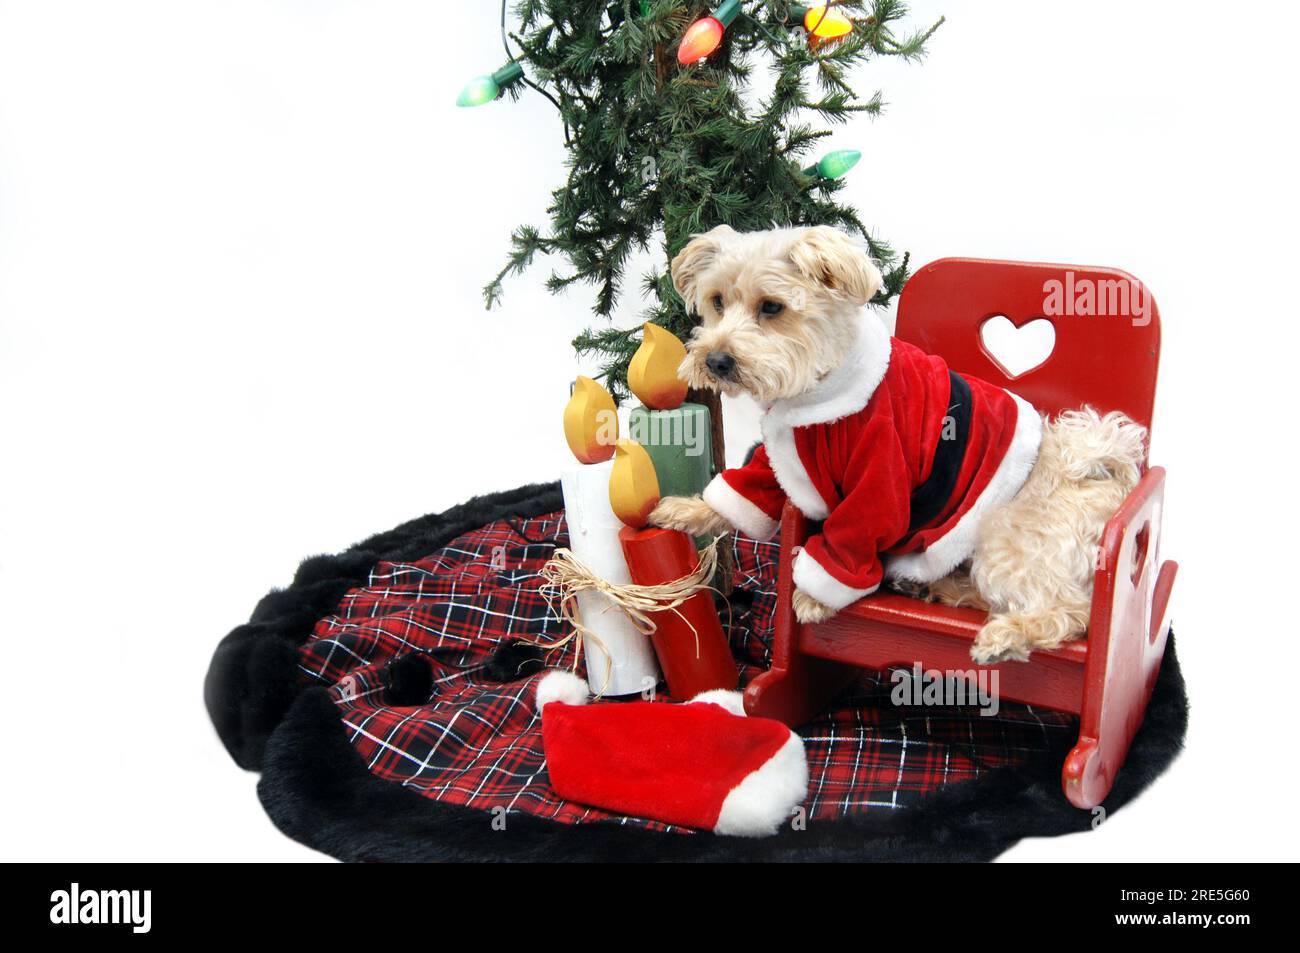 Silky Poo sitzt in einem roten hölzernen Schaukelstuhl unter dem Weihnachtsbaum und wartet darauf, dass der Weihnachtsmann kommt. Stockfoto